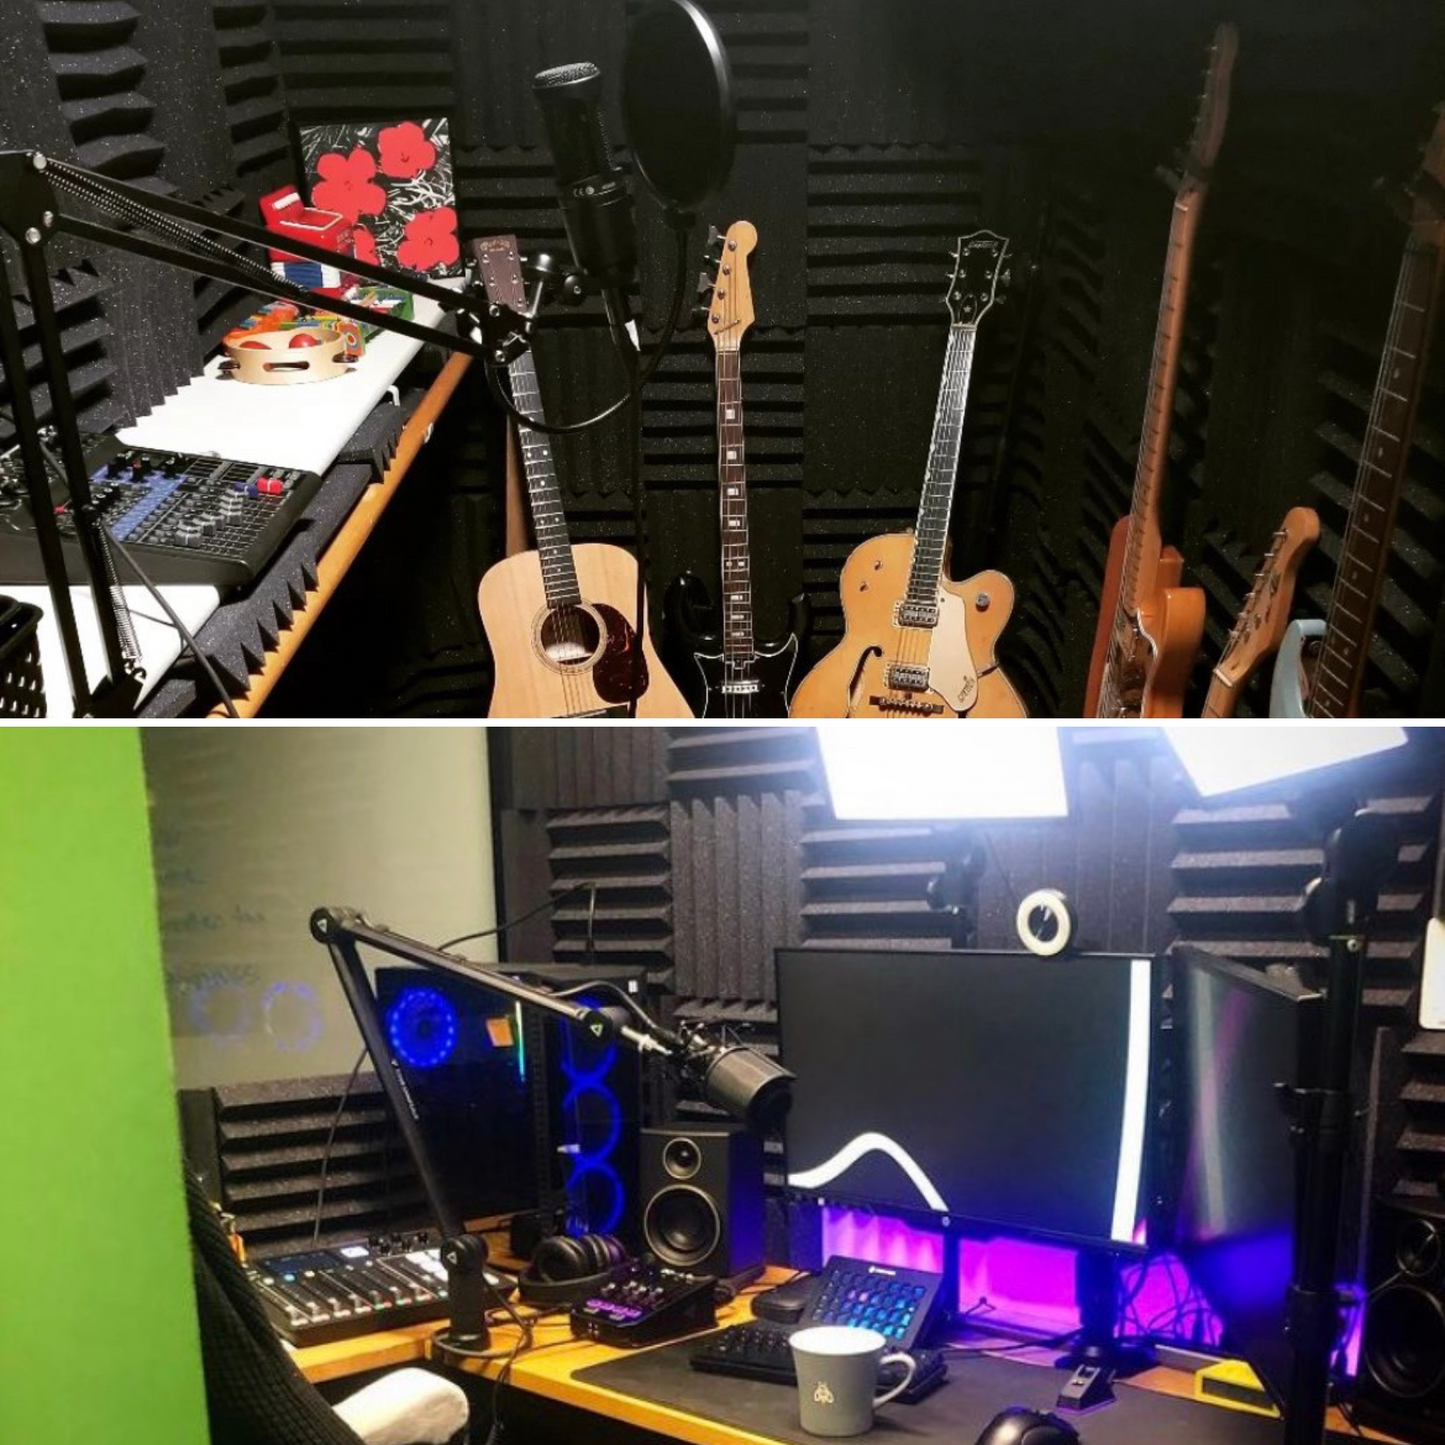 Recording Studio Acoustic Treatment Bundles